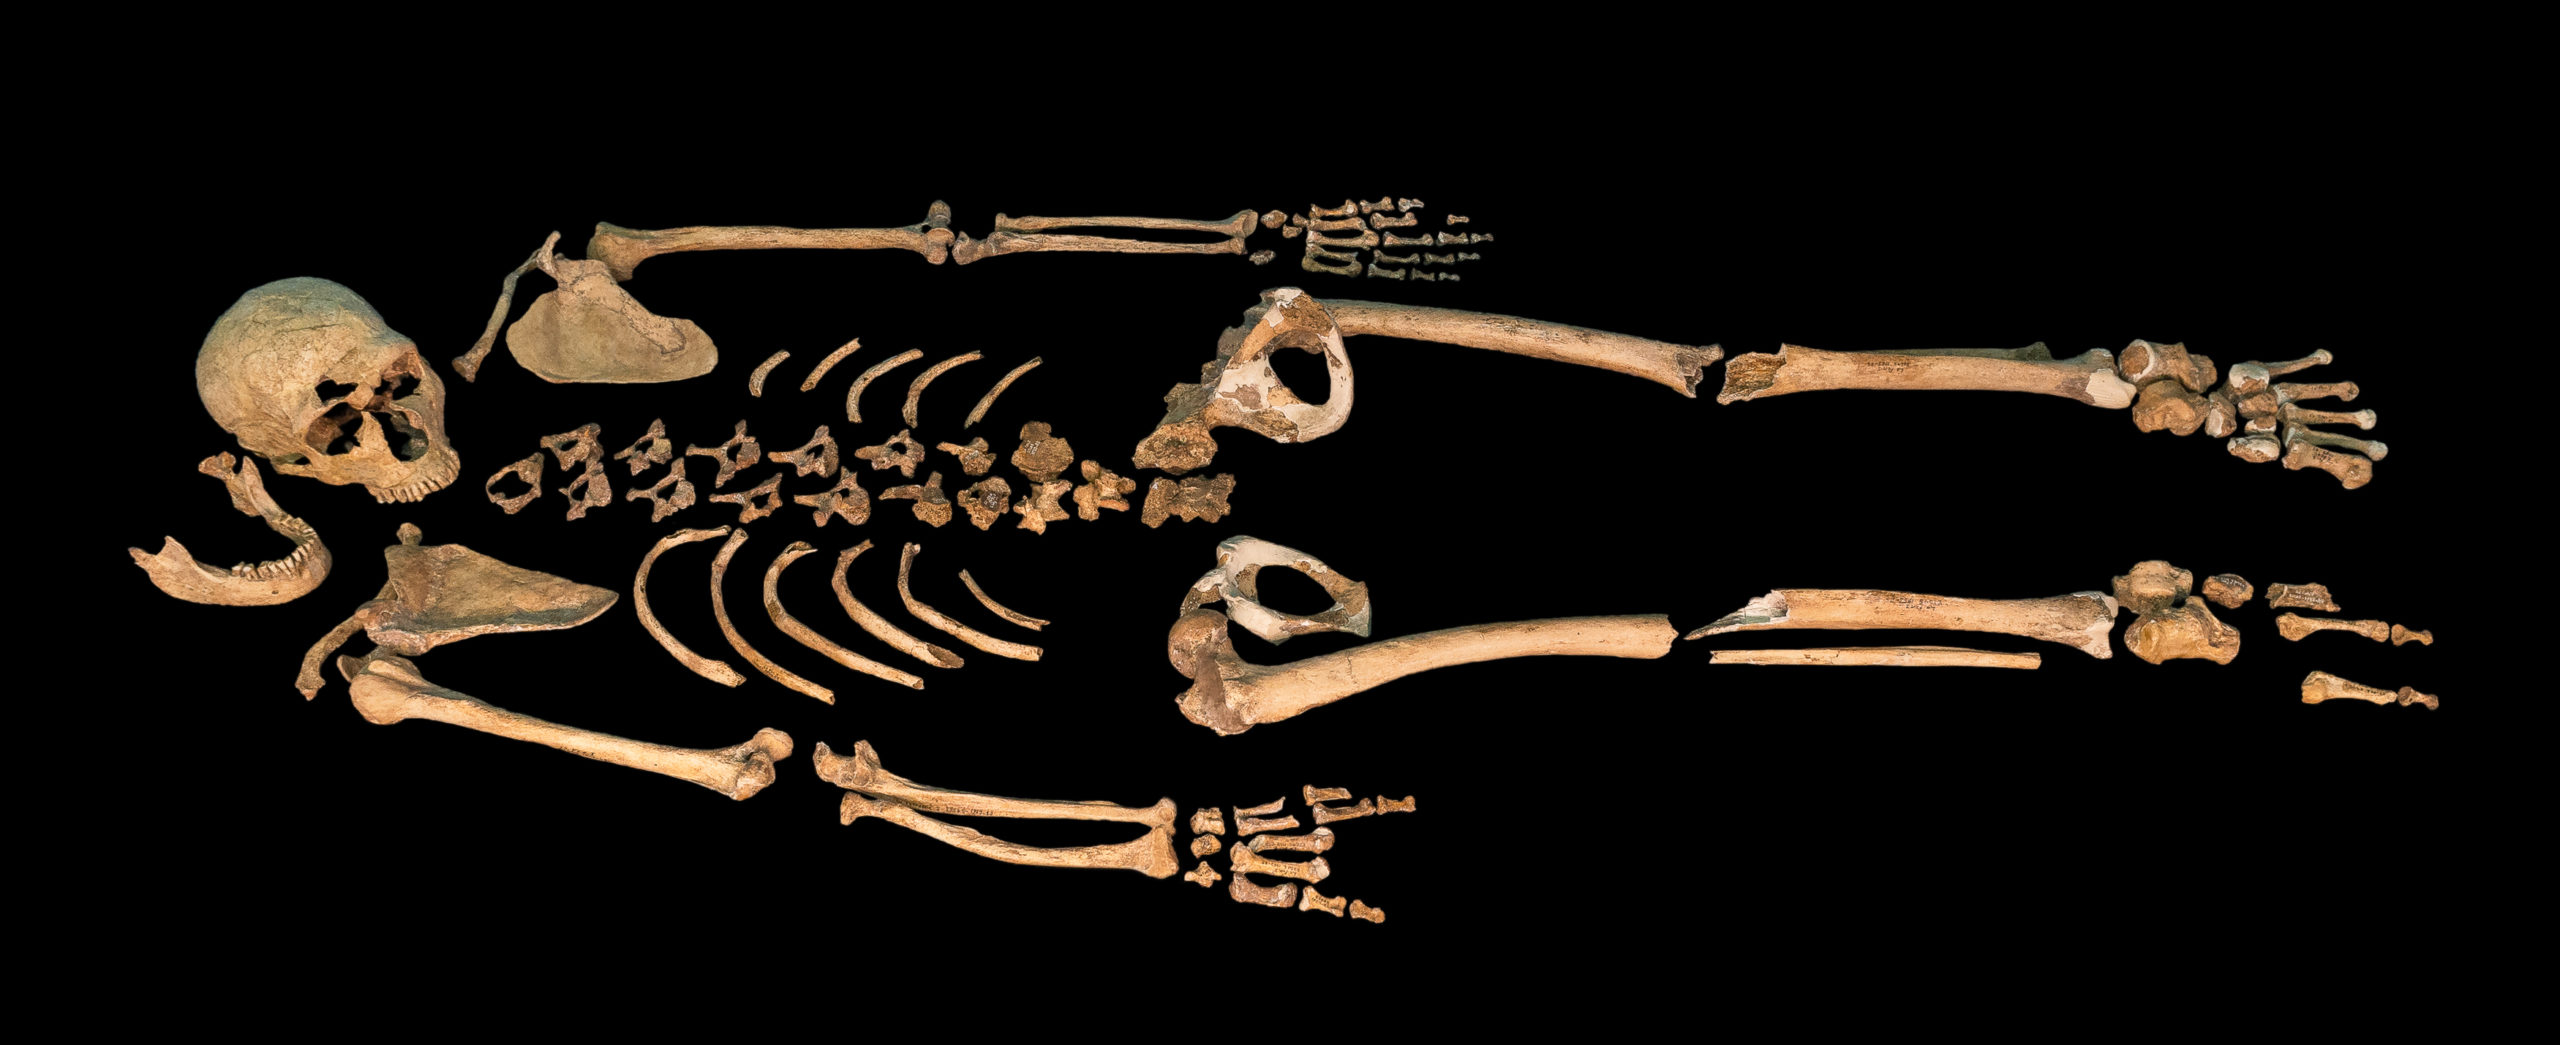 кости древних людей картинки